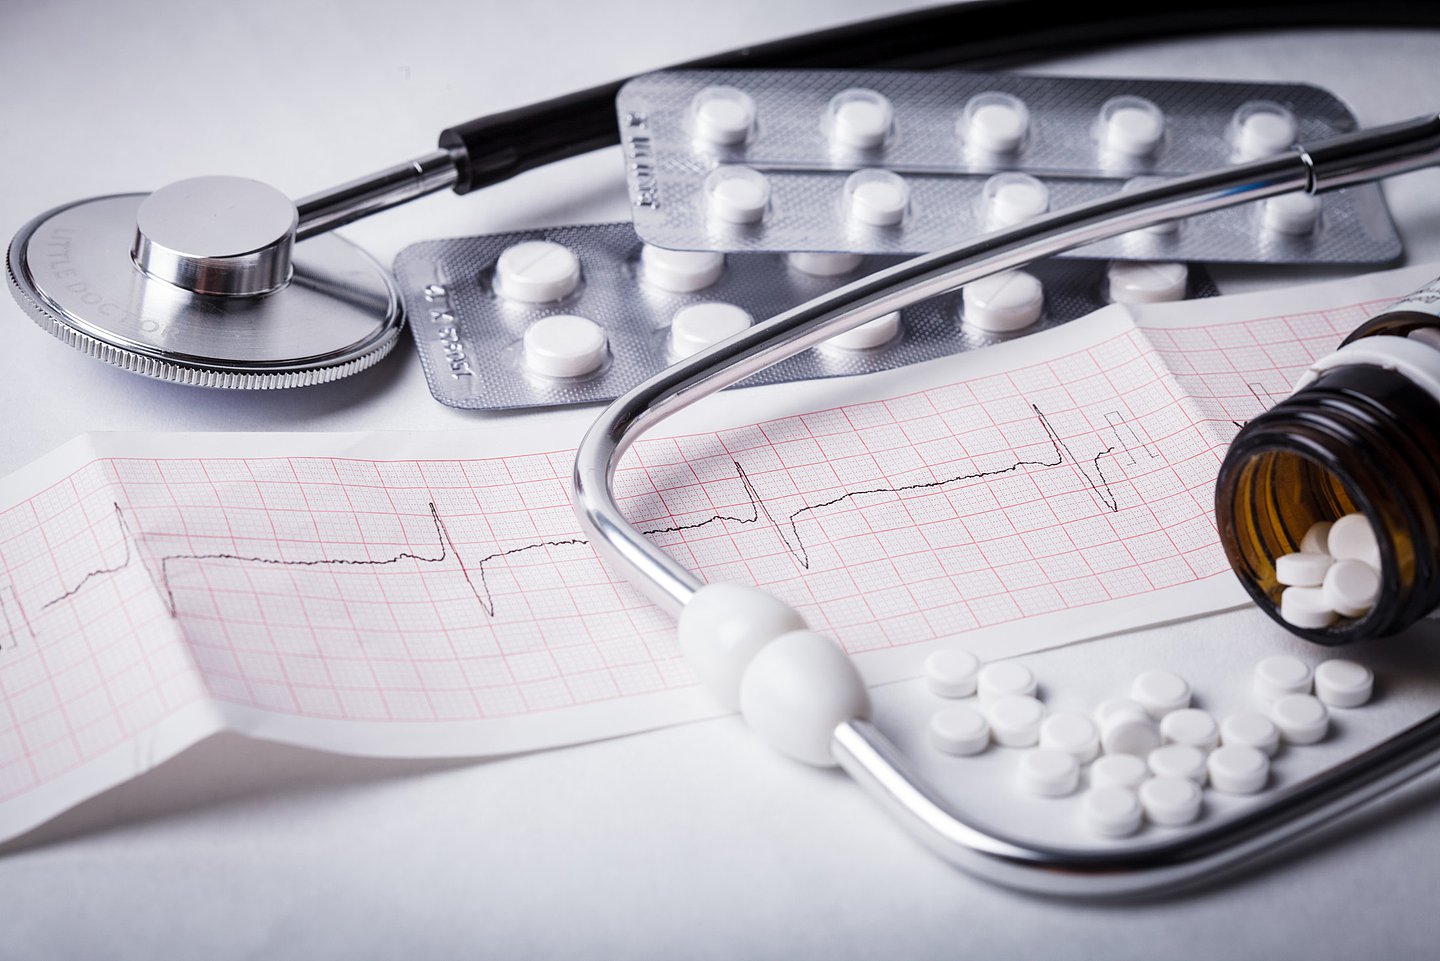 Foto zeigt ein Stethoskop, einen Ausdruck vom EKG, Tablettenblister sowie eine offenen, umgekippten Behälter, aus dem Tabletten herausgefallen sind.